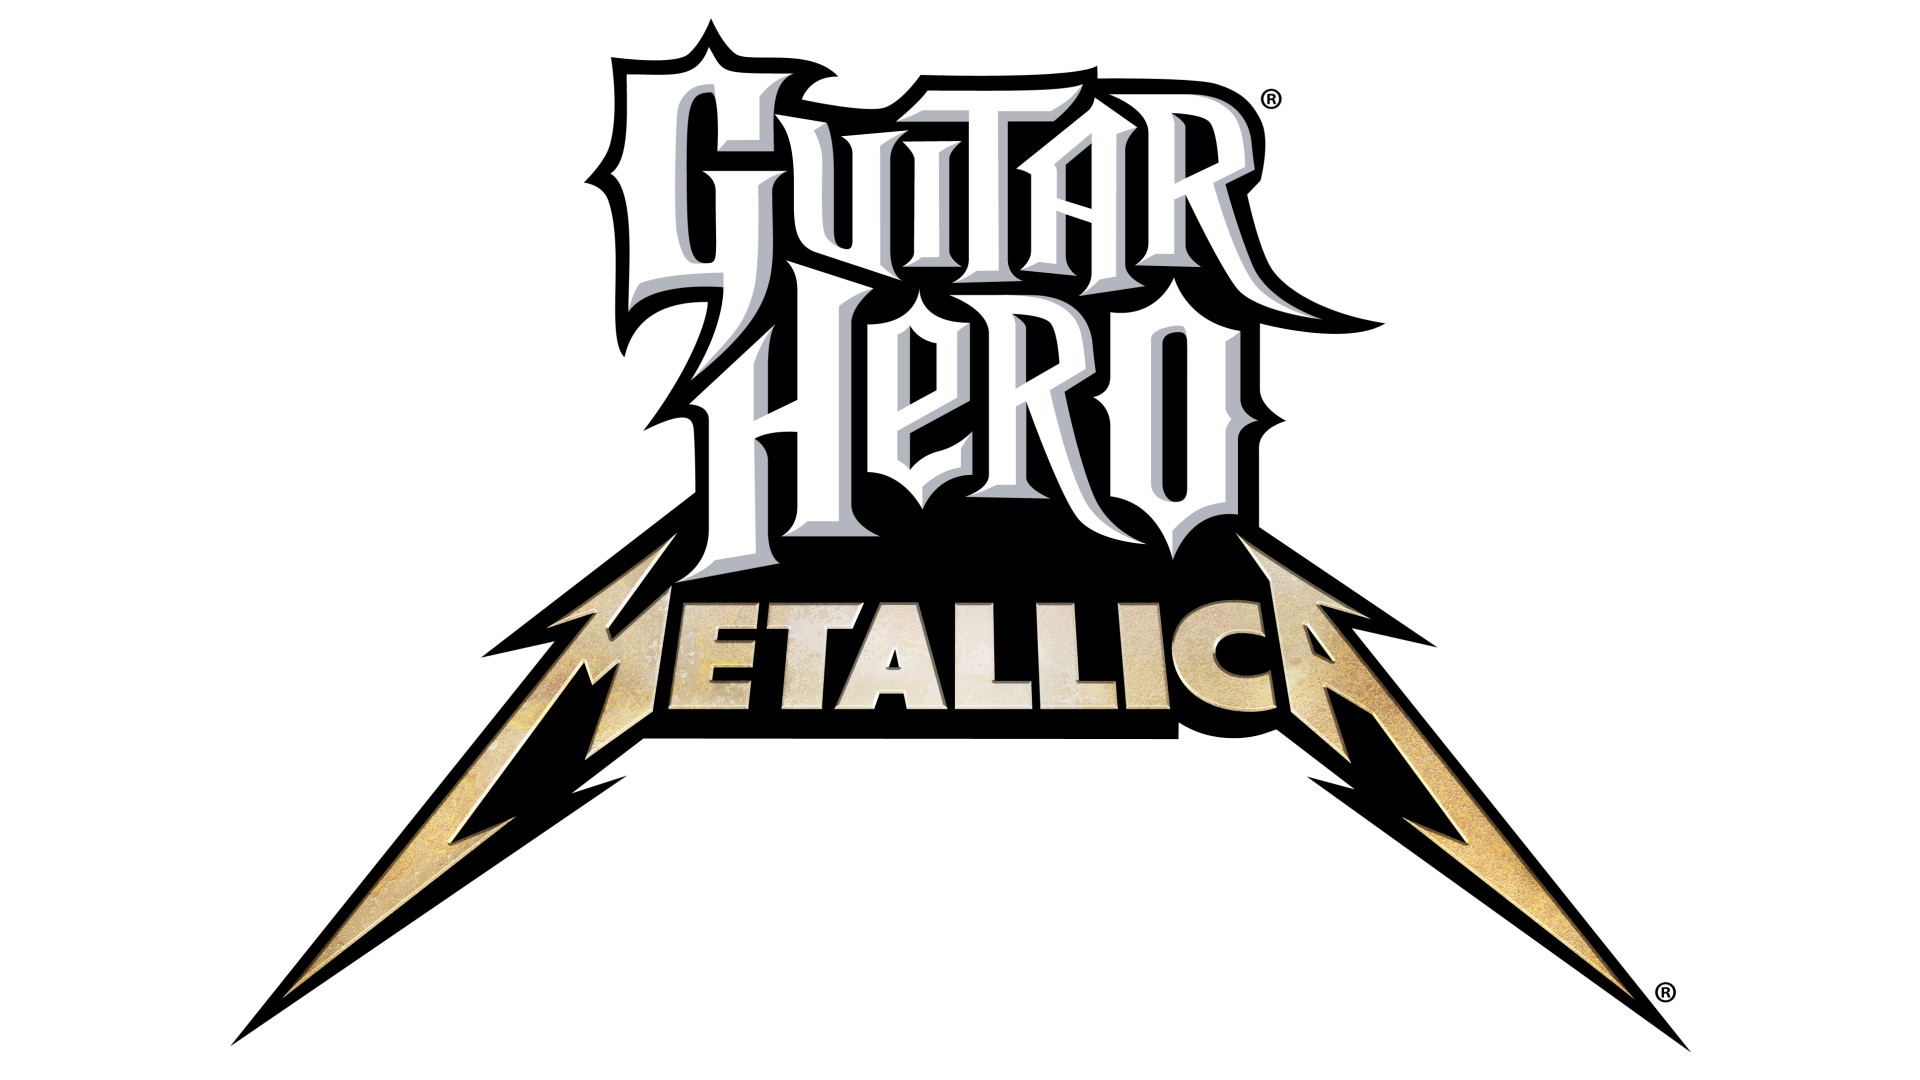 Video Game Guitar Hero: Metallica HD Wallpaper